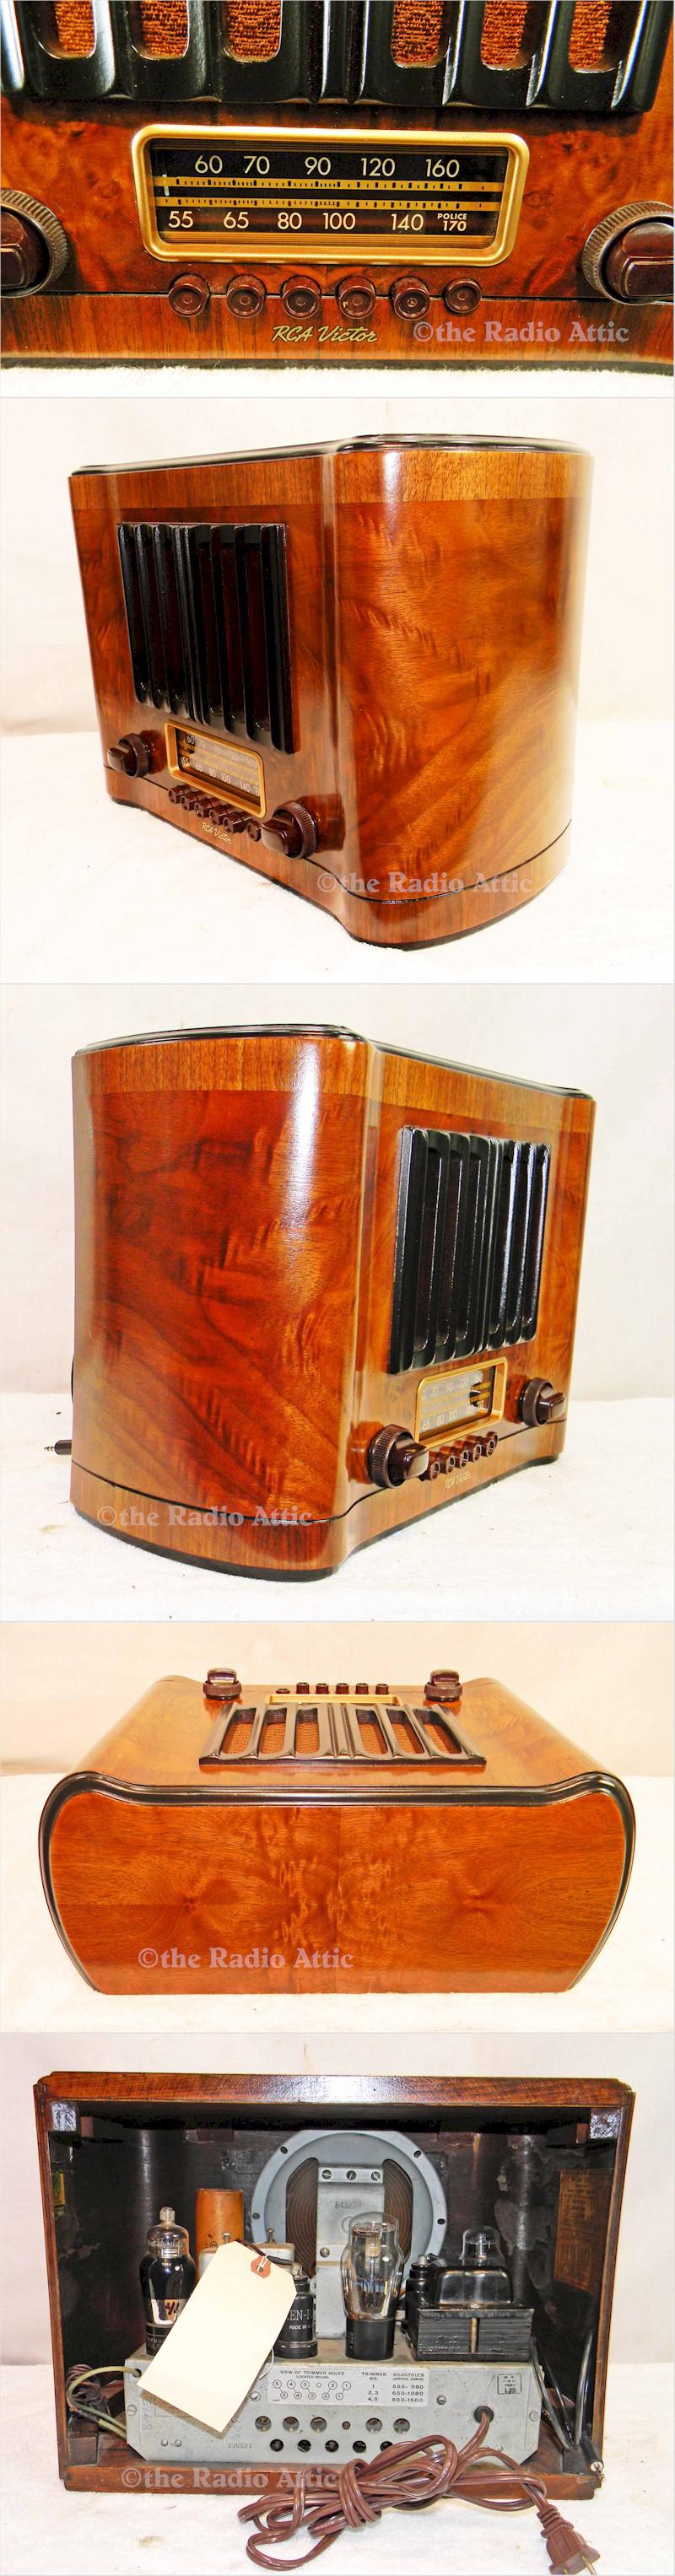 RCA 96T1 Mantle Radio (1939)